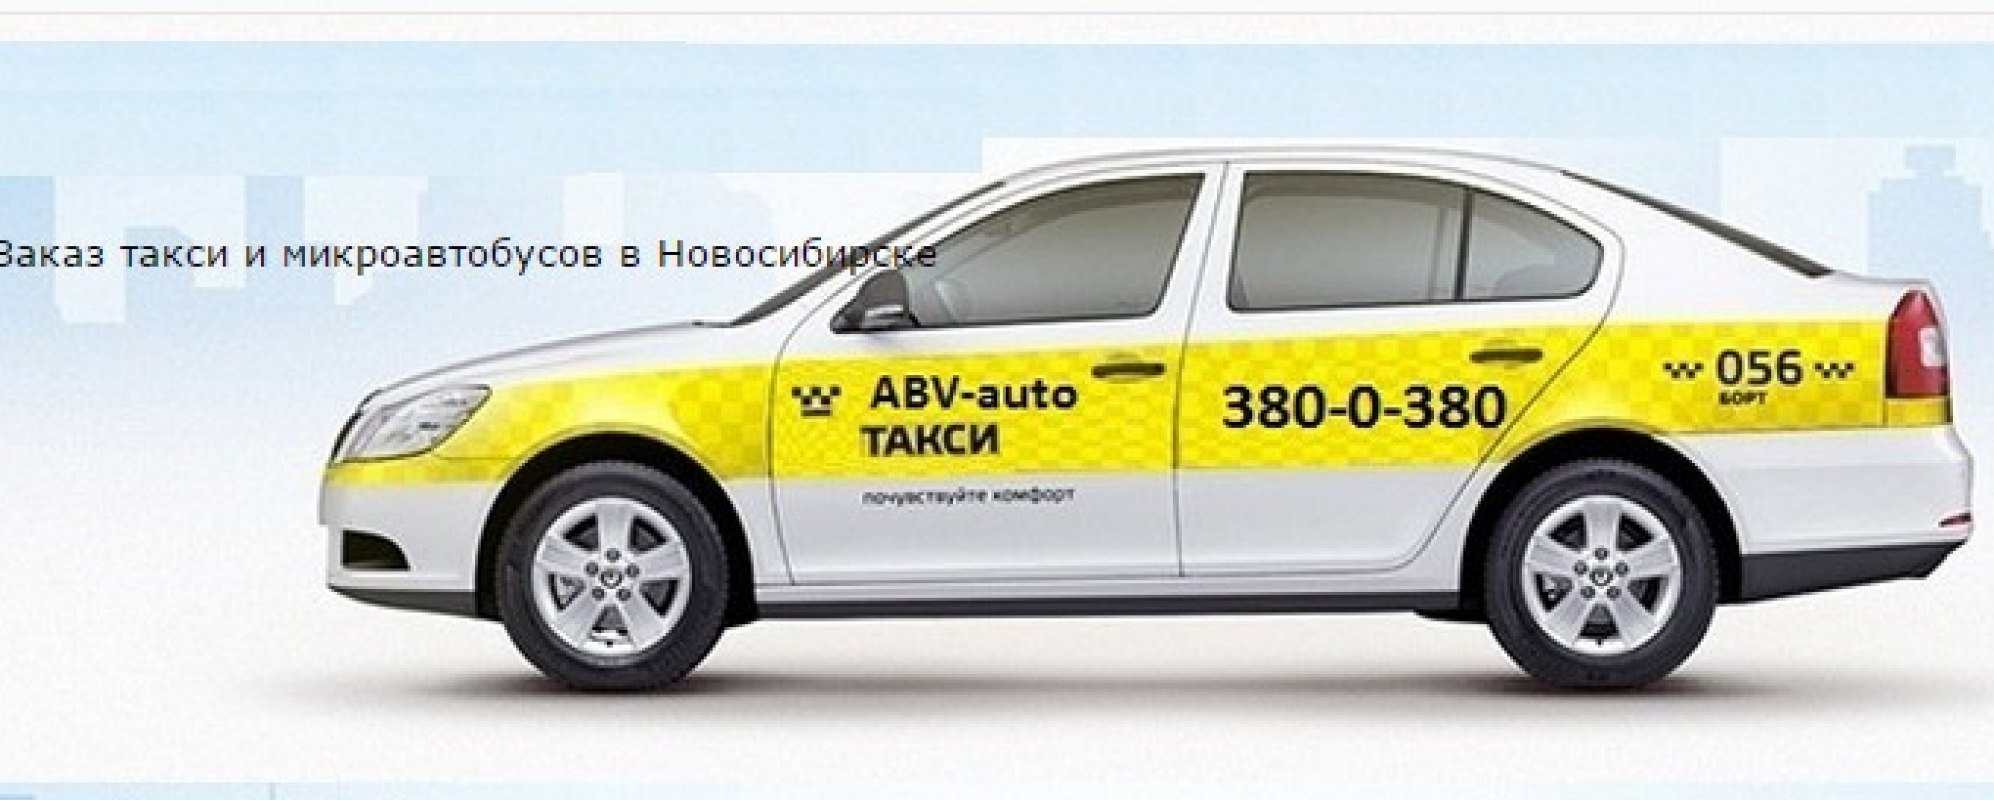 Проверить машину такси по номеру. Вызов такси. Такси Новосибирск. Вызвать такси. Заказ такси.